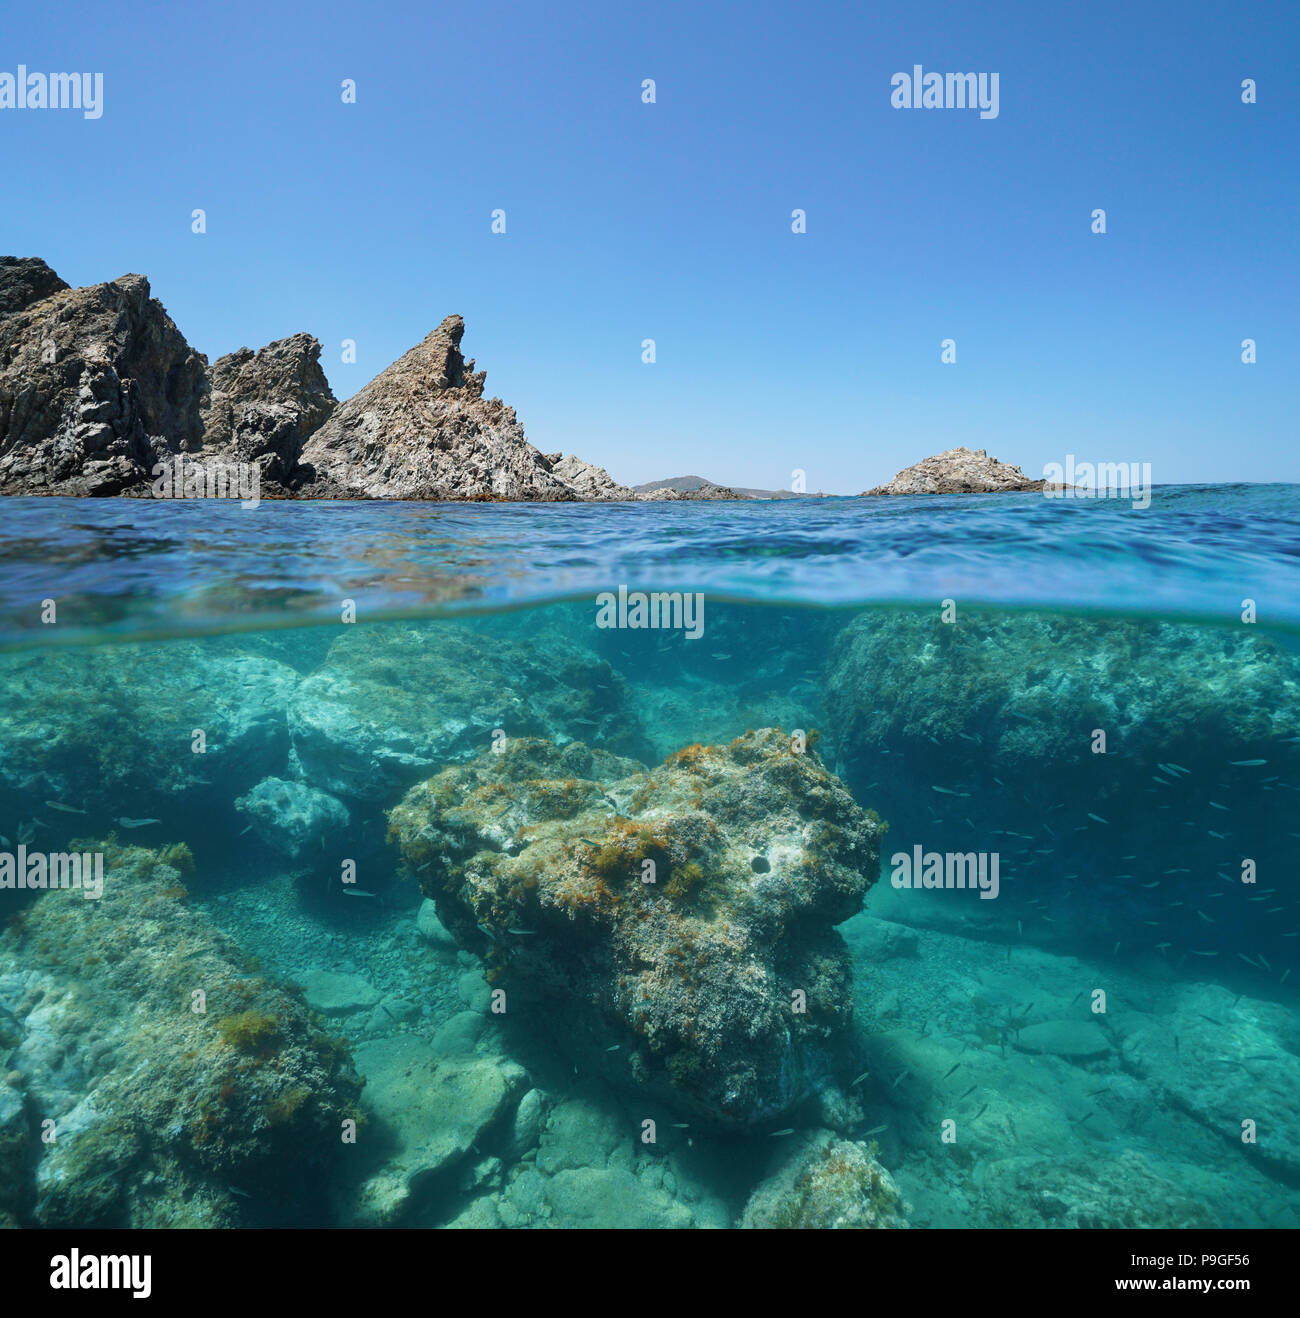 Costa rocciosa con rocce sottomarine, vista suddivisa al di sopra e al di sotto della superficie, il mar Mediterraneo, riserva marina di Cerbere Banyuls, Francia Foto Stock